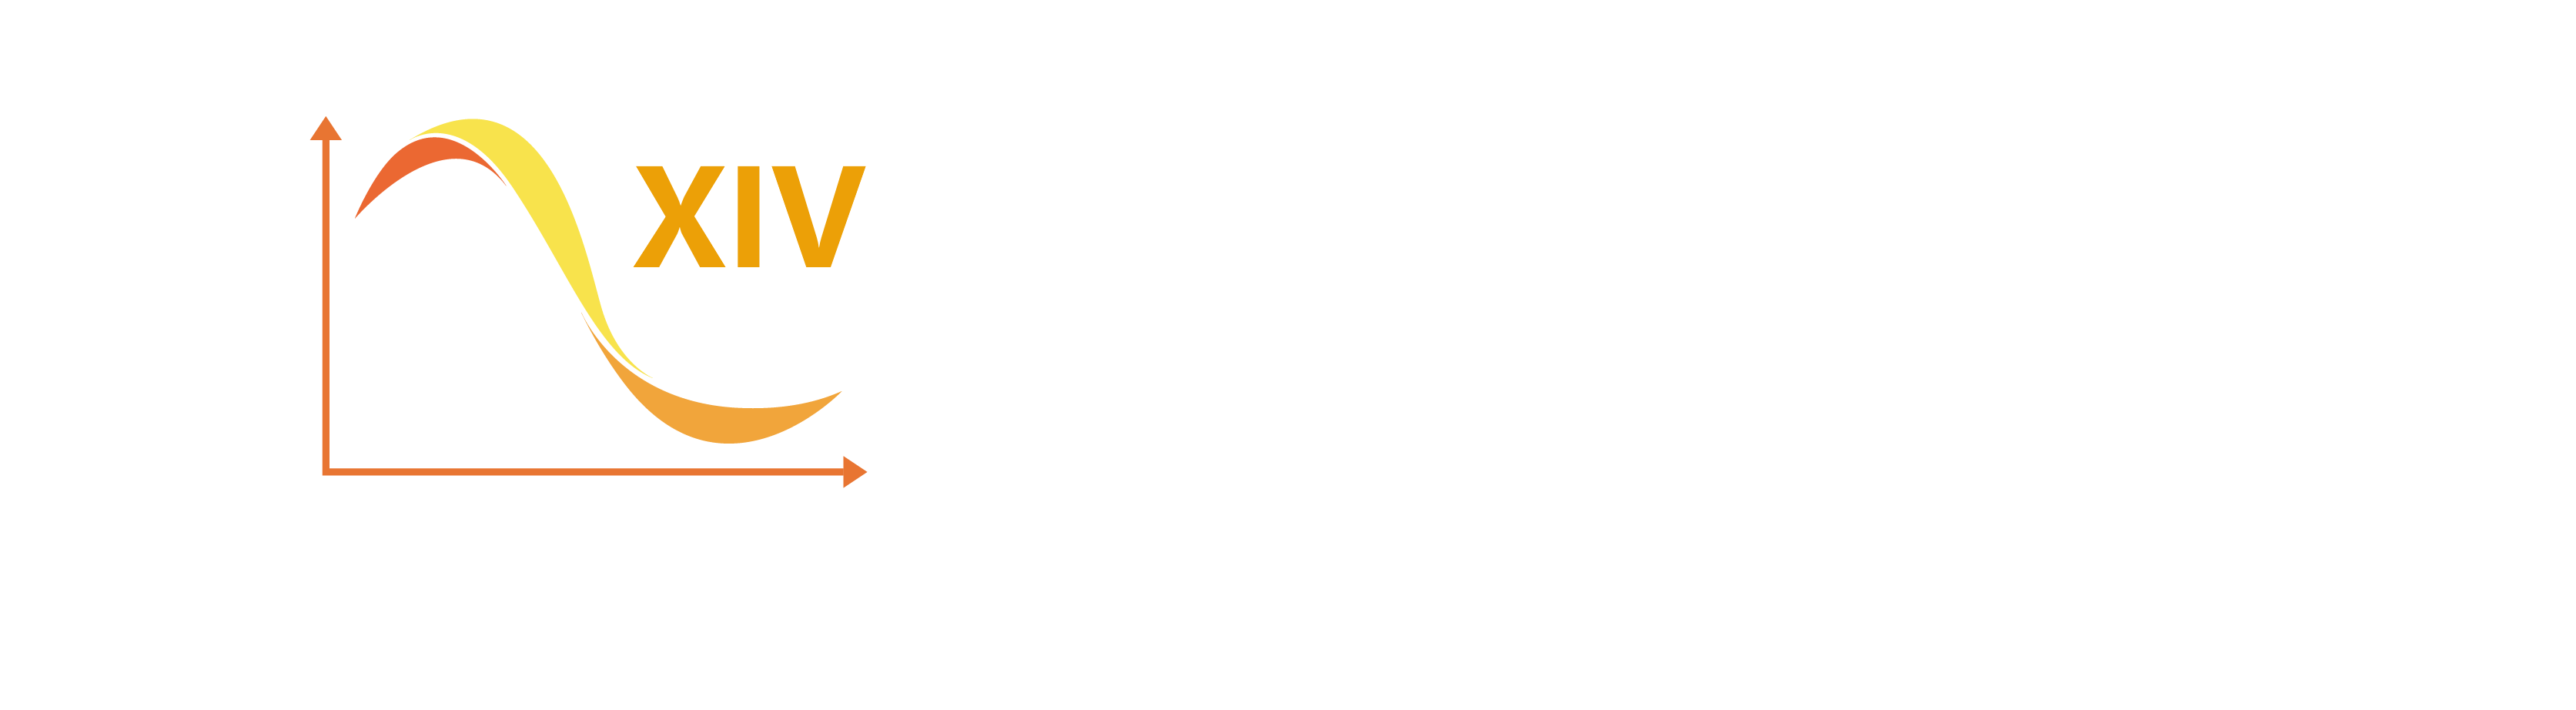 LOGO COLOQUIO 2023